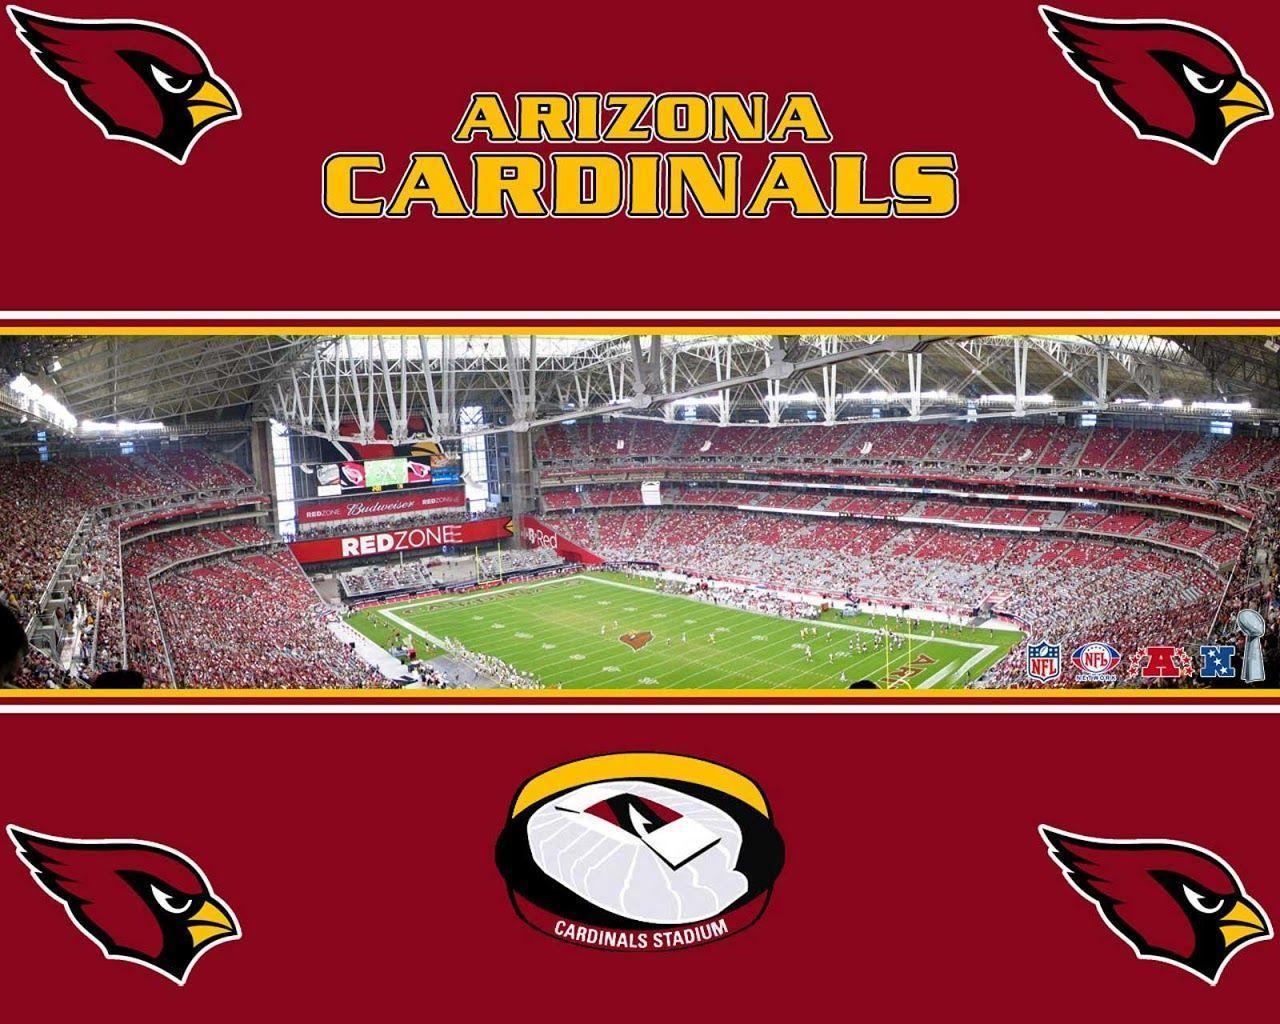 Arizona Cardinals Wallpaper Download Cardinals